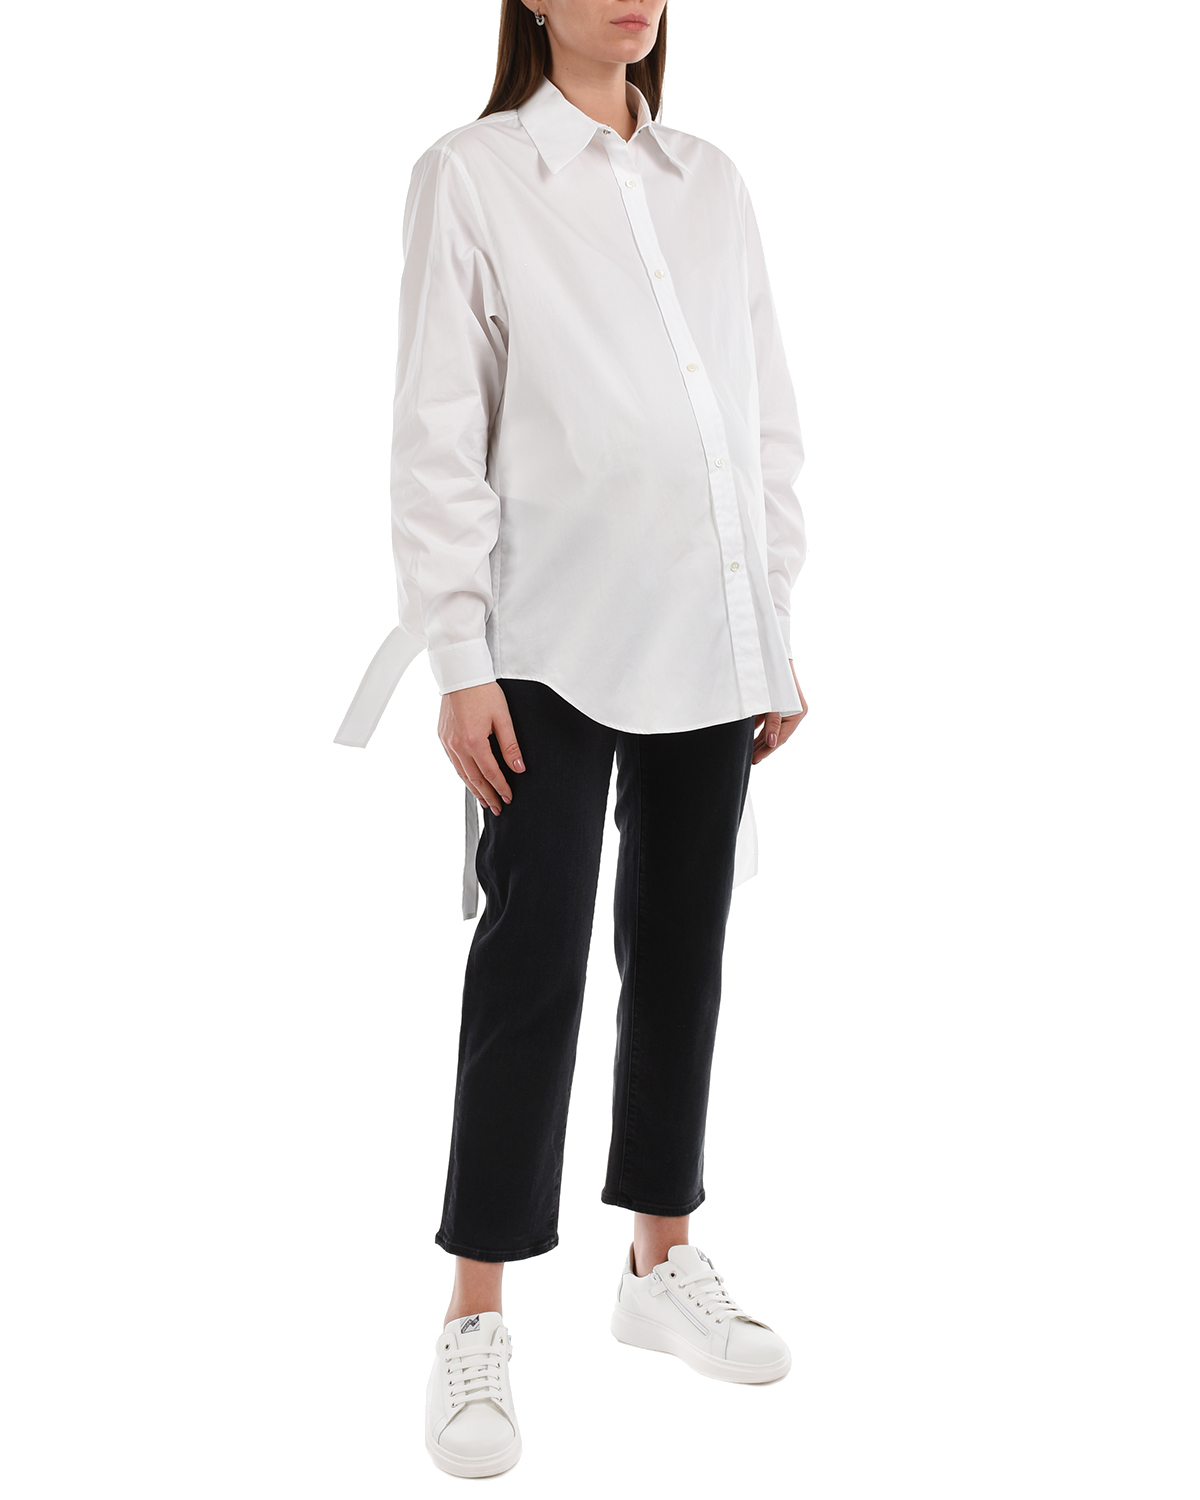 Удлиненная белая рубашка No. 21, размер 42, цвет белый - фото 8